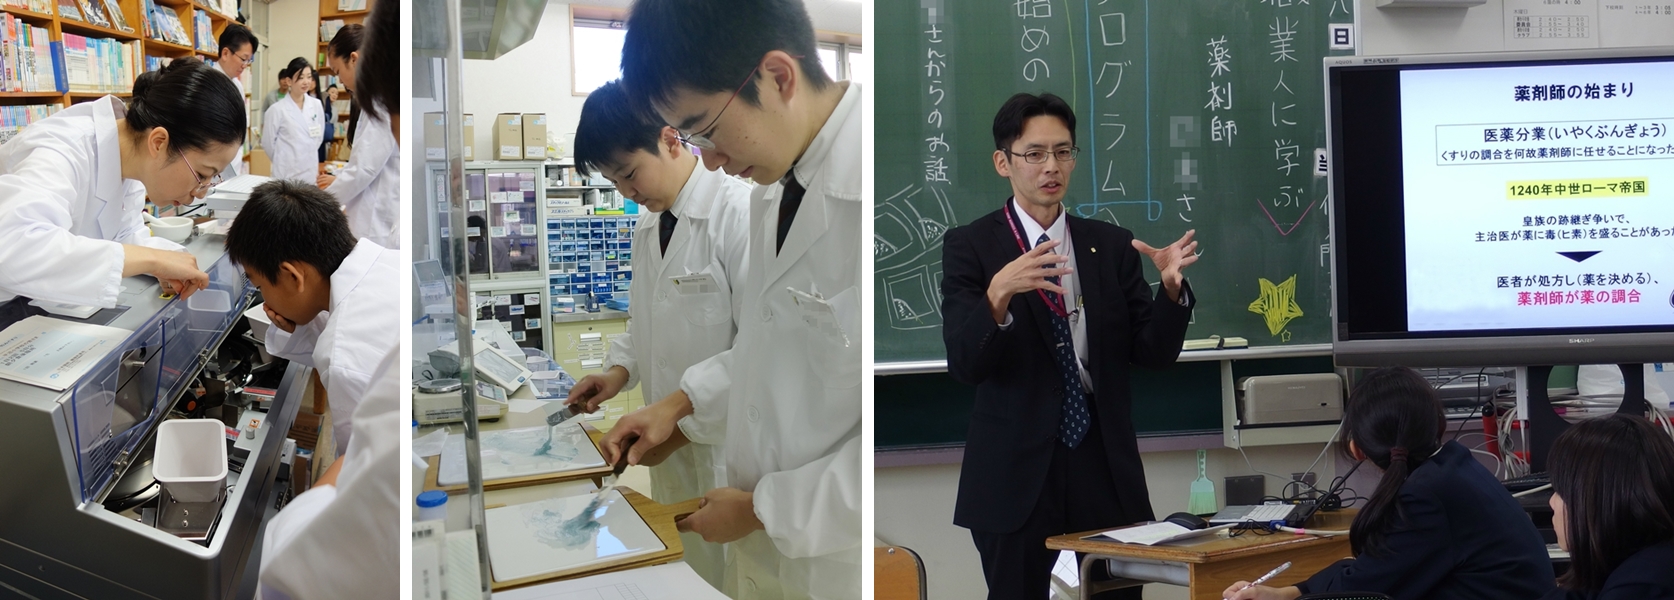 小学校から高校生に薬剤師の仕事を学ぶ機会を 日本調剤 全国各地でキャリア教育に貢献 日本調剤株式会社のプレスリリース